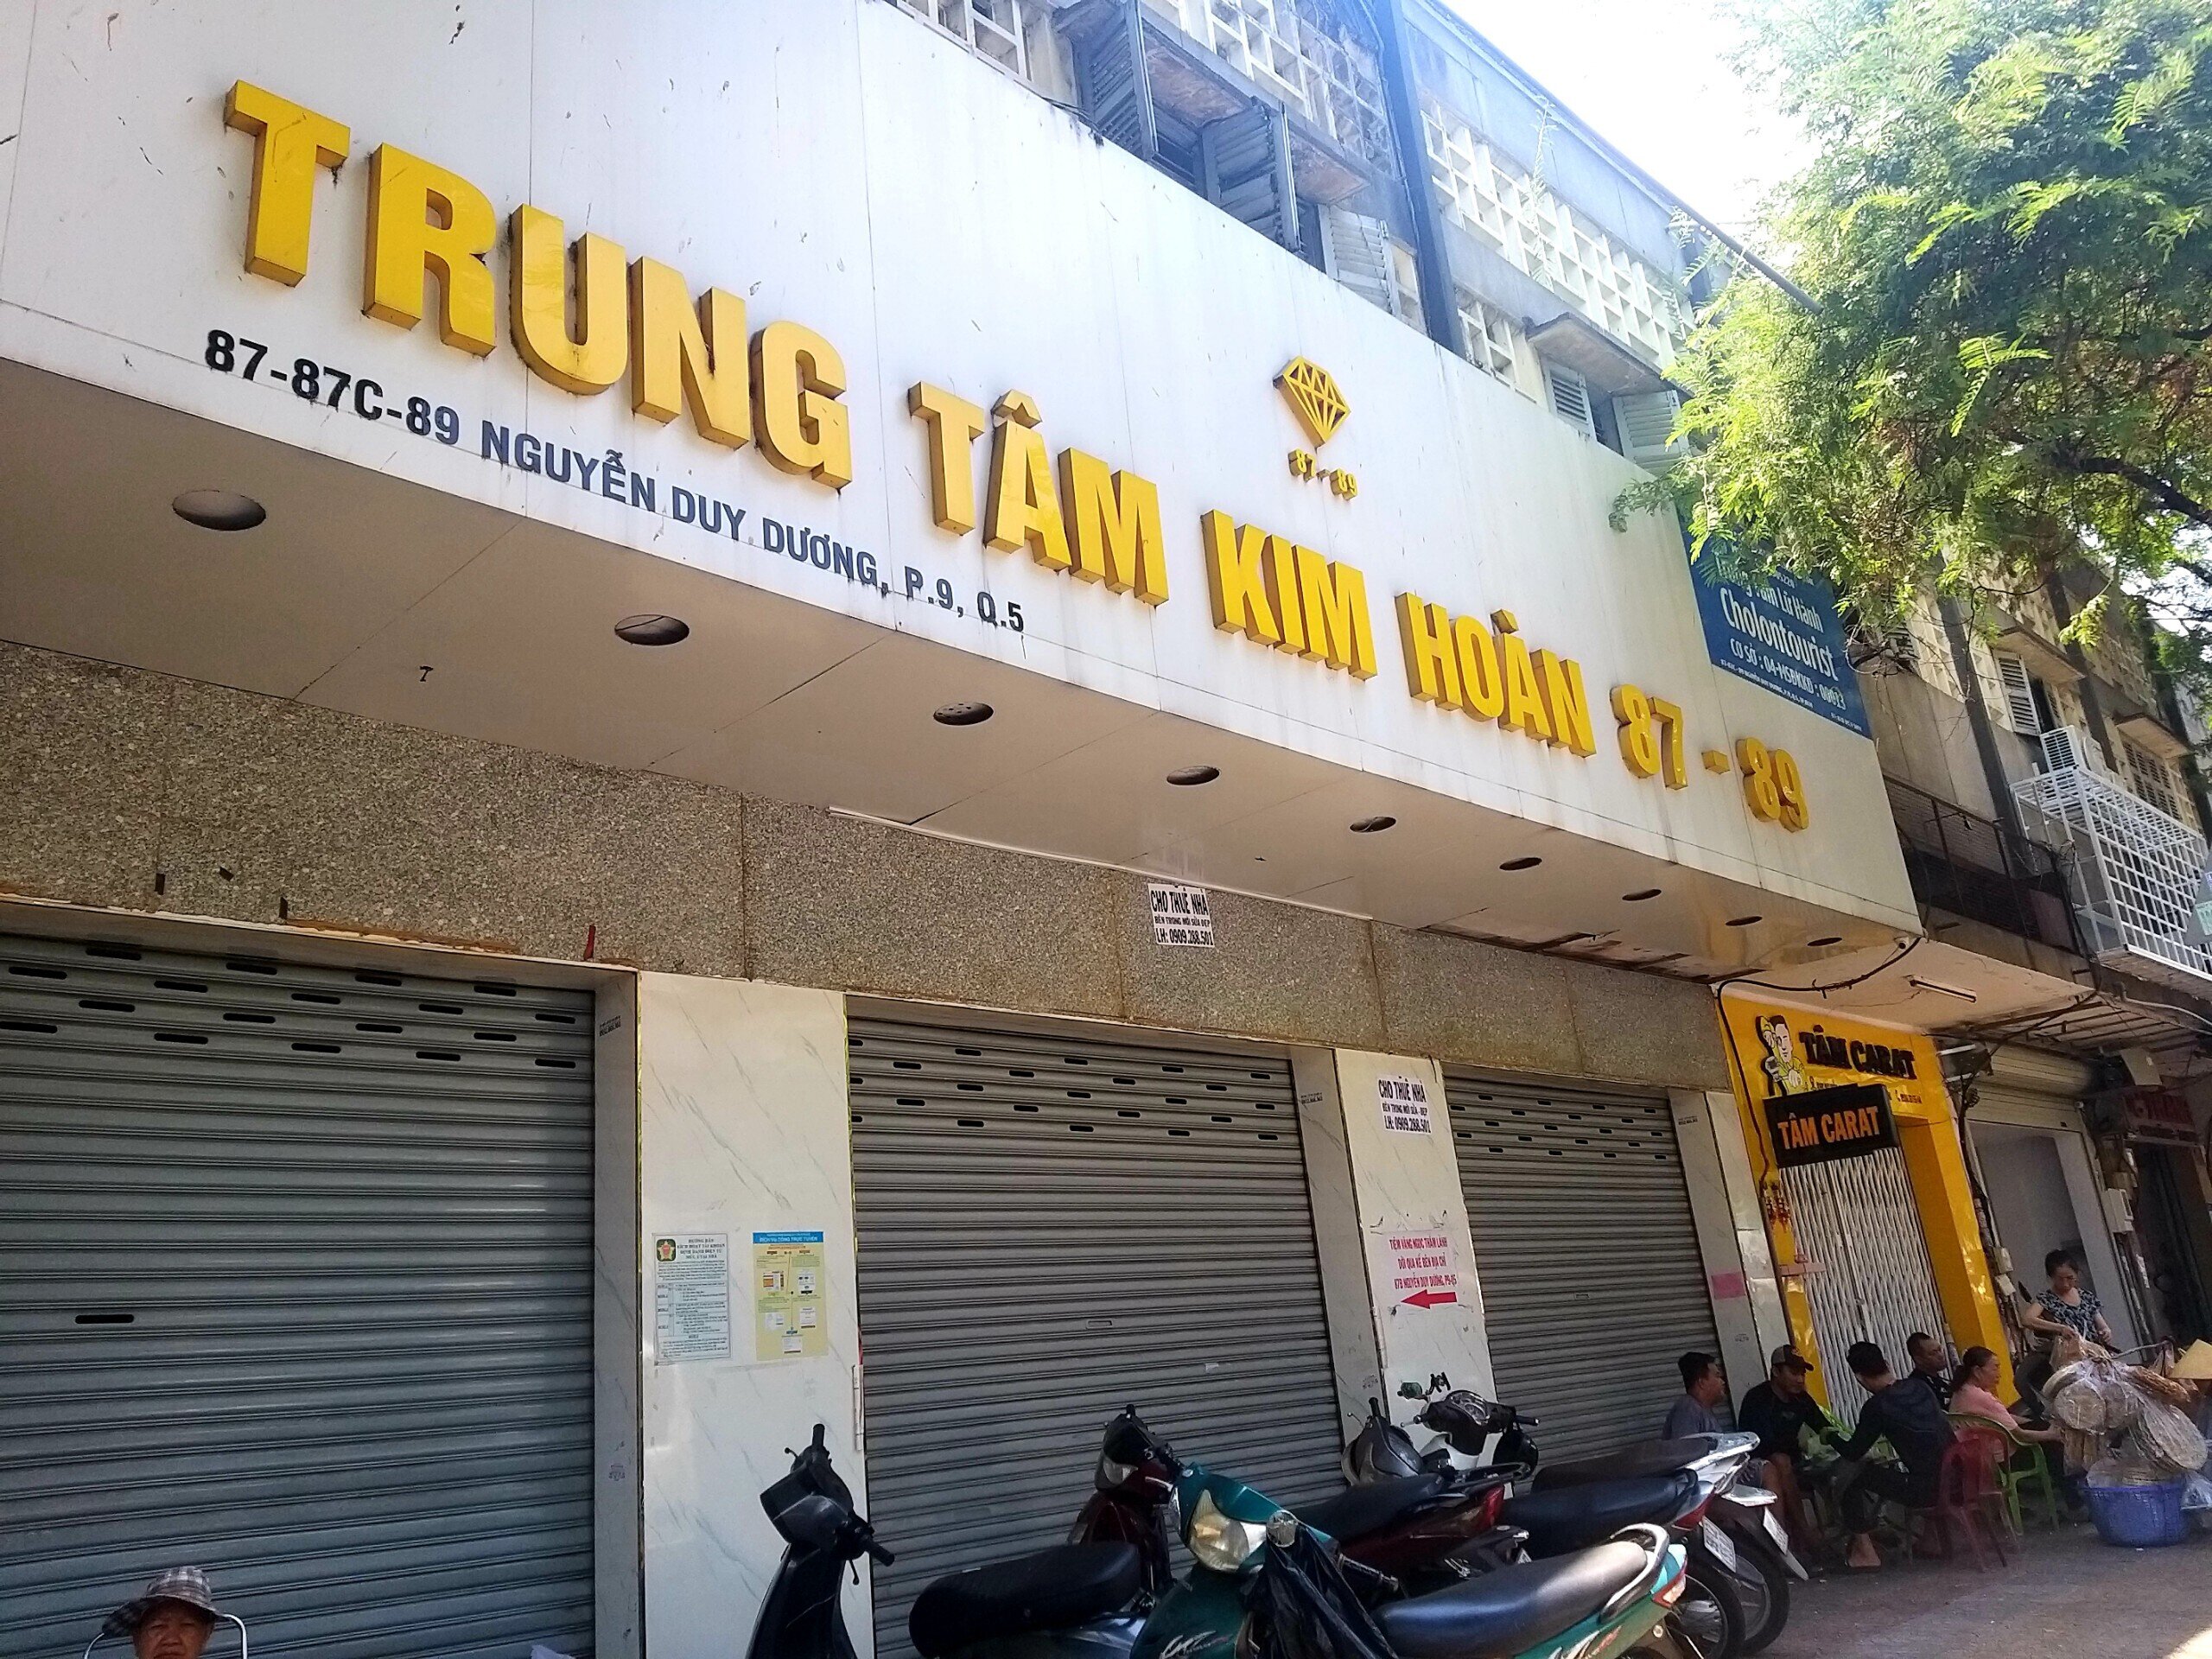 Điểm kinh doanh vàng bạc đá quý trên đường Nguyễn Duy Dương - bên hông chợ An Đông đóng cửa gần 2 năm qua. (Ảnh: H. Linh)